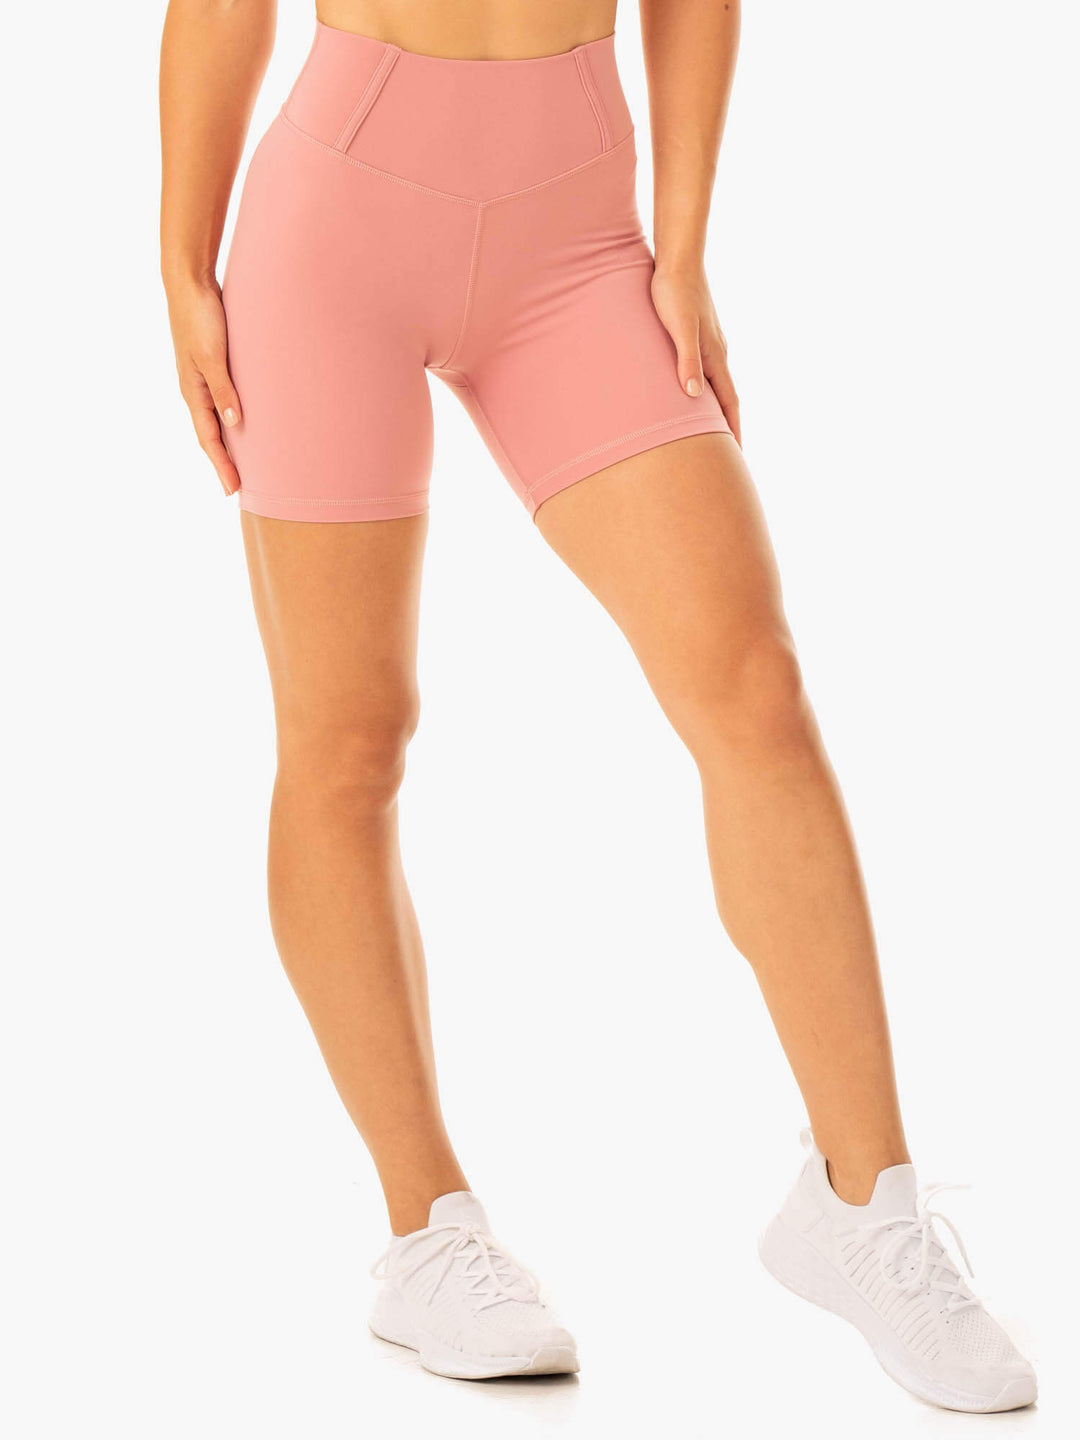 Form Scrunch Bum Shorts - Dusty Pink Clothing Ryderwear 